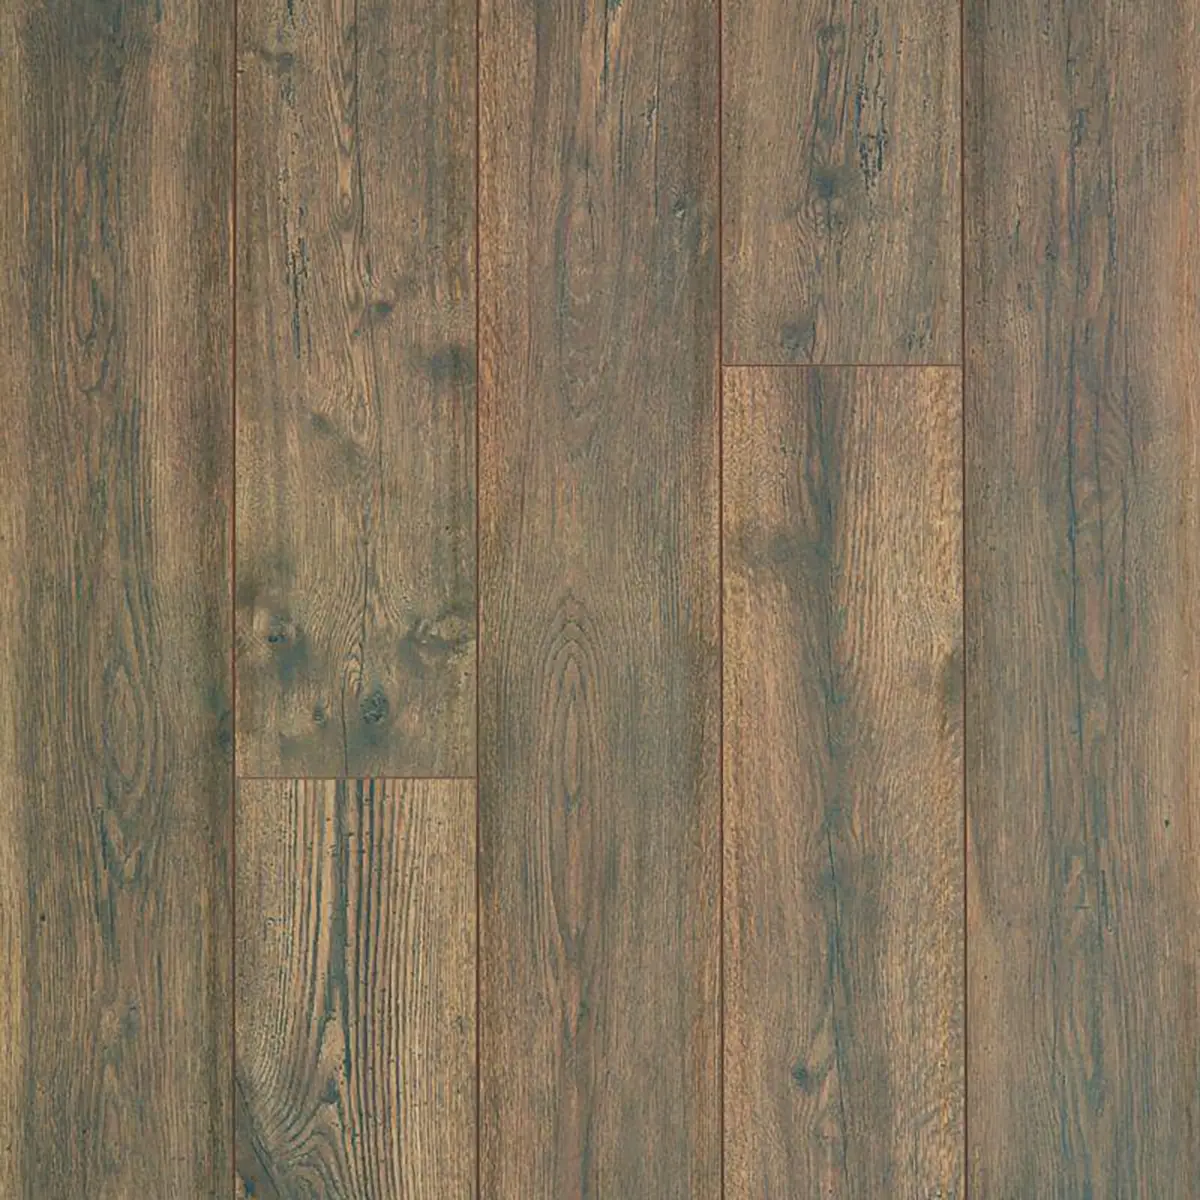 Rivercrest Aged Barrel Oak by Mohawk Flooring